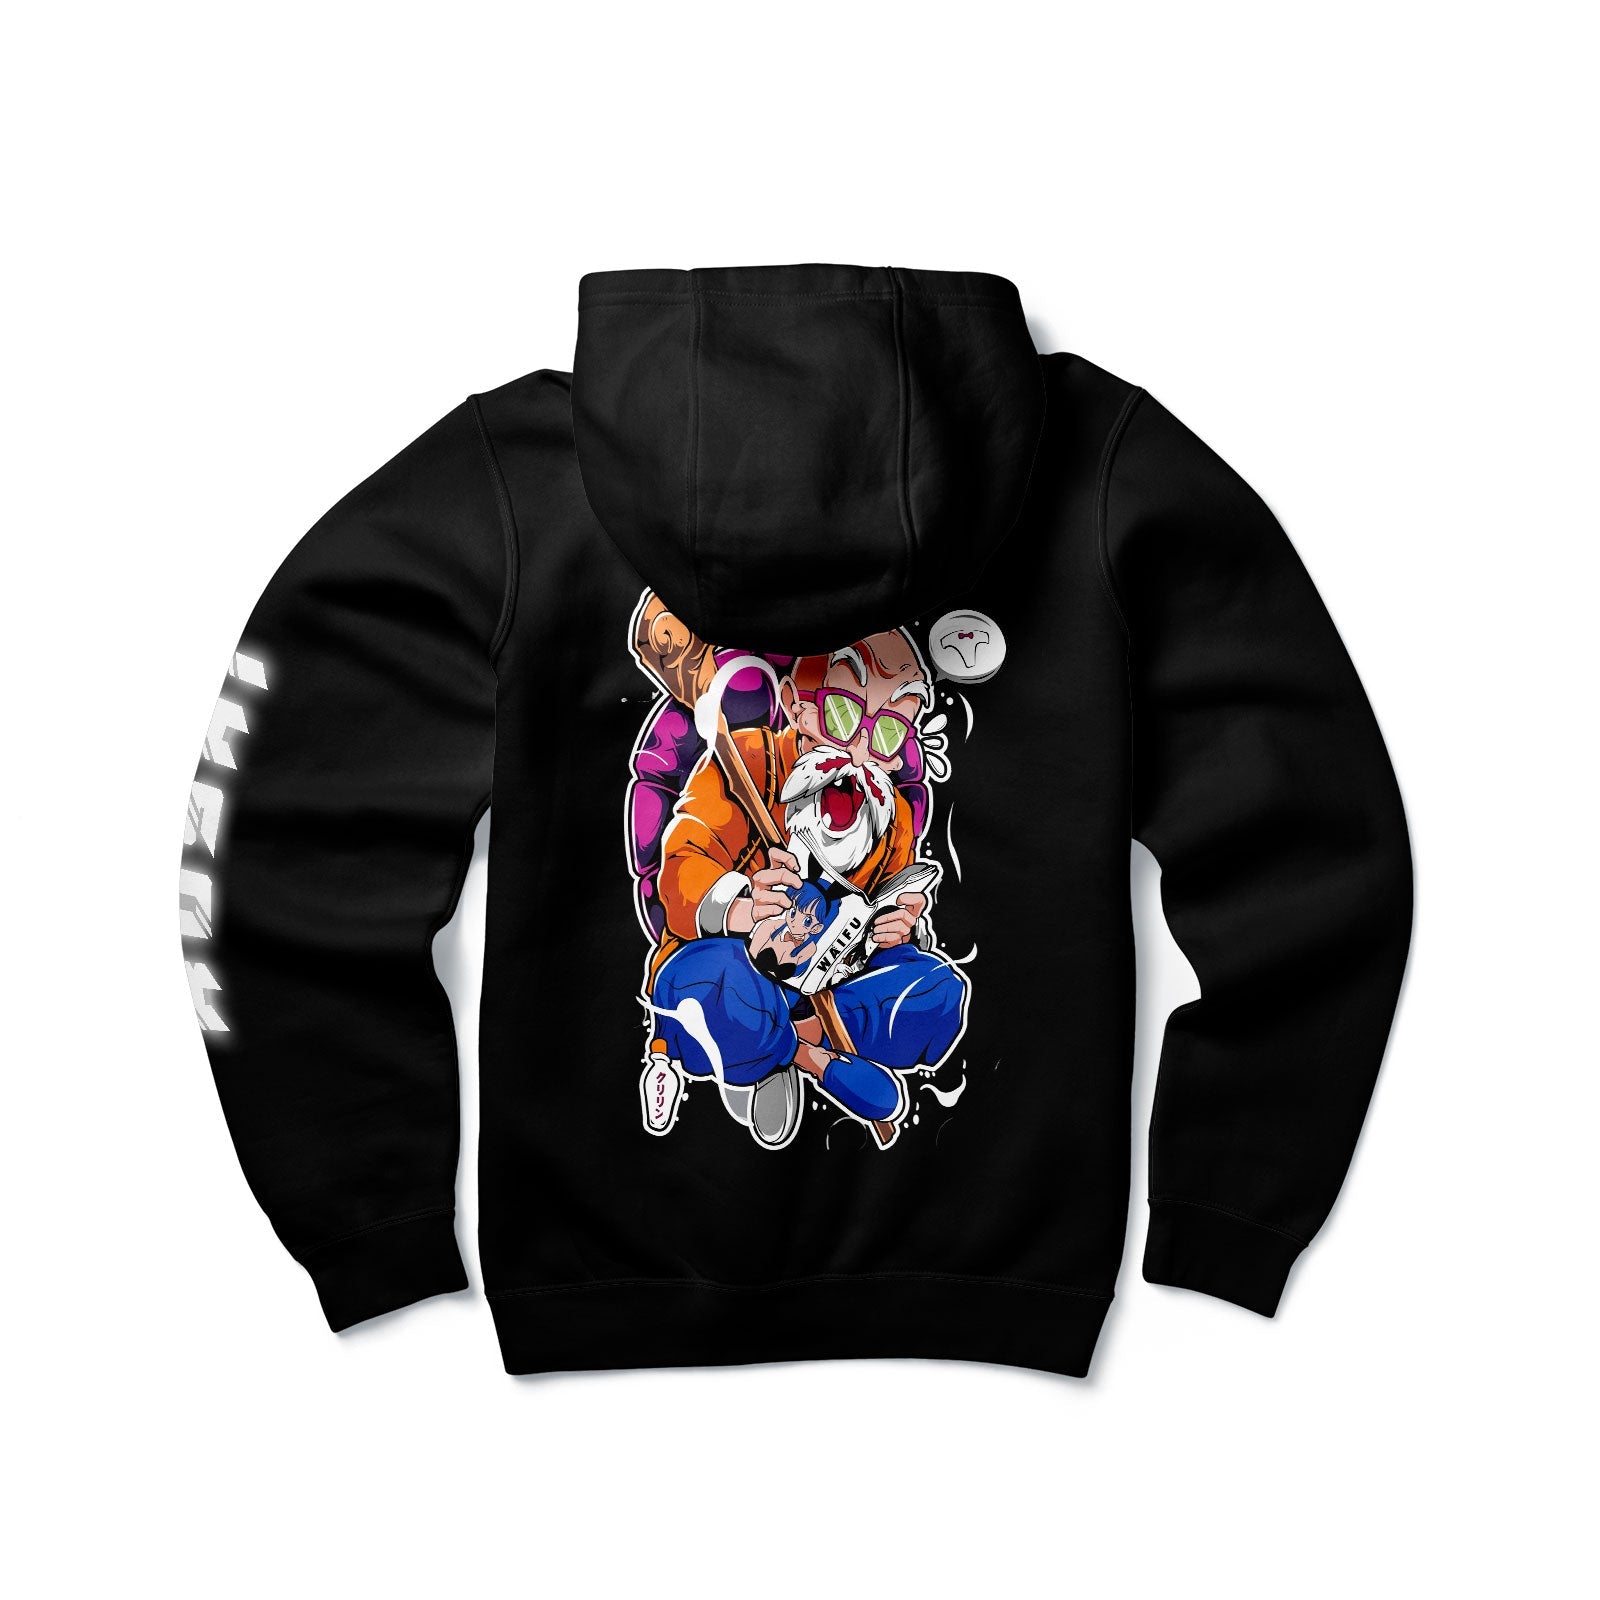 Buy Anime Sweatshirt Online